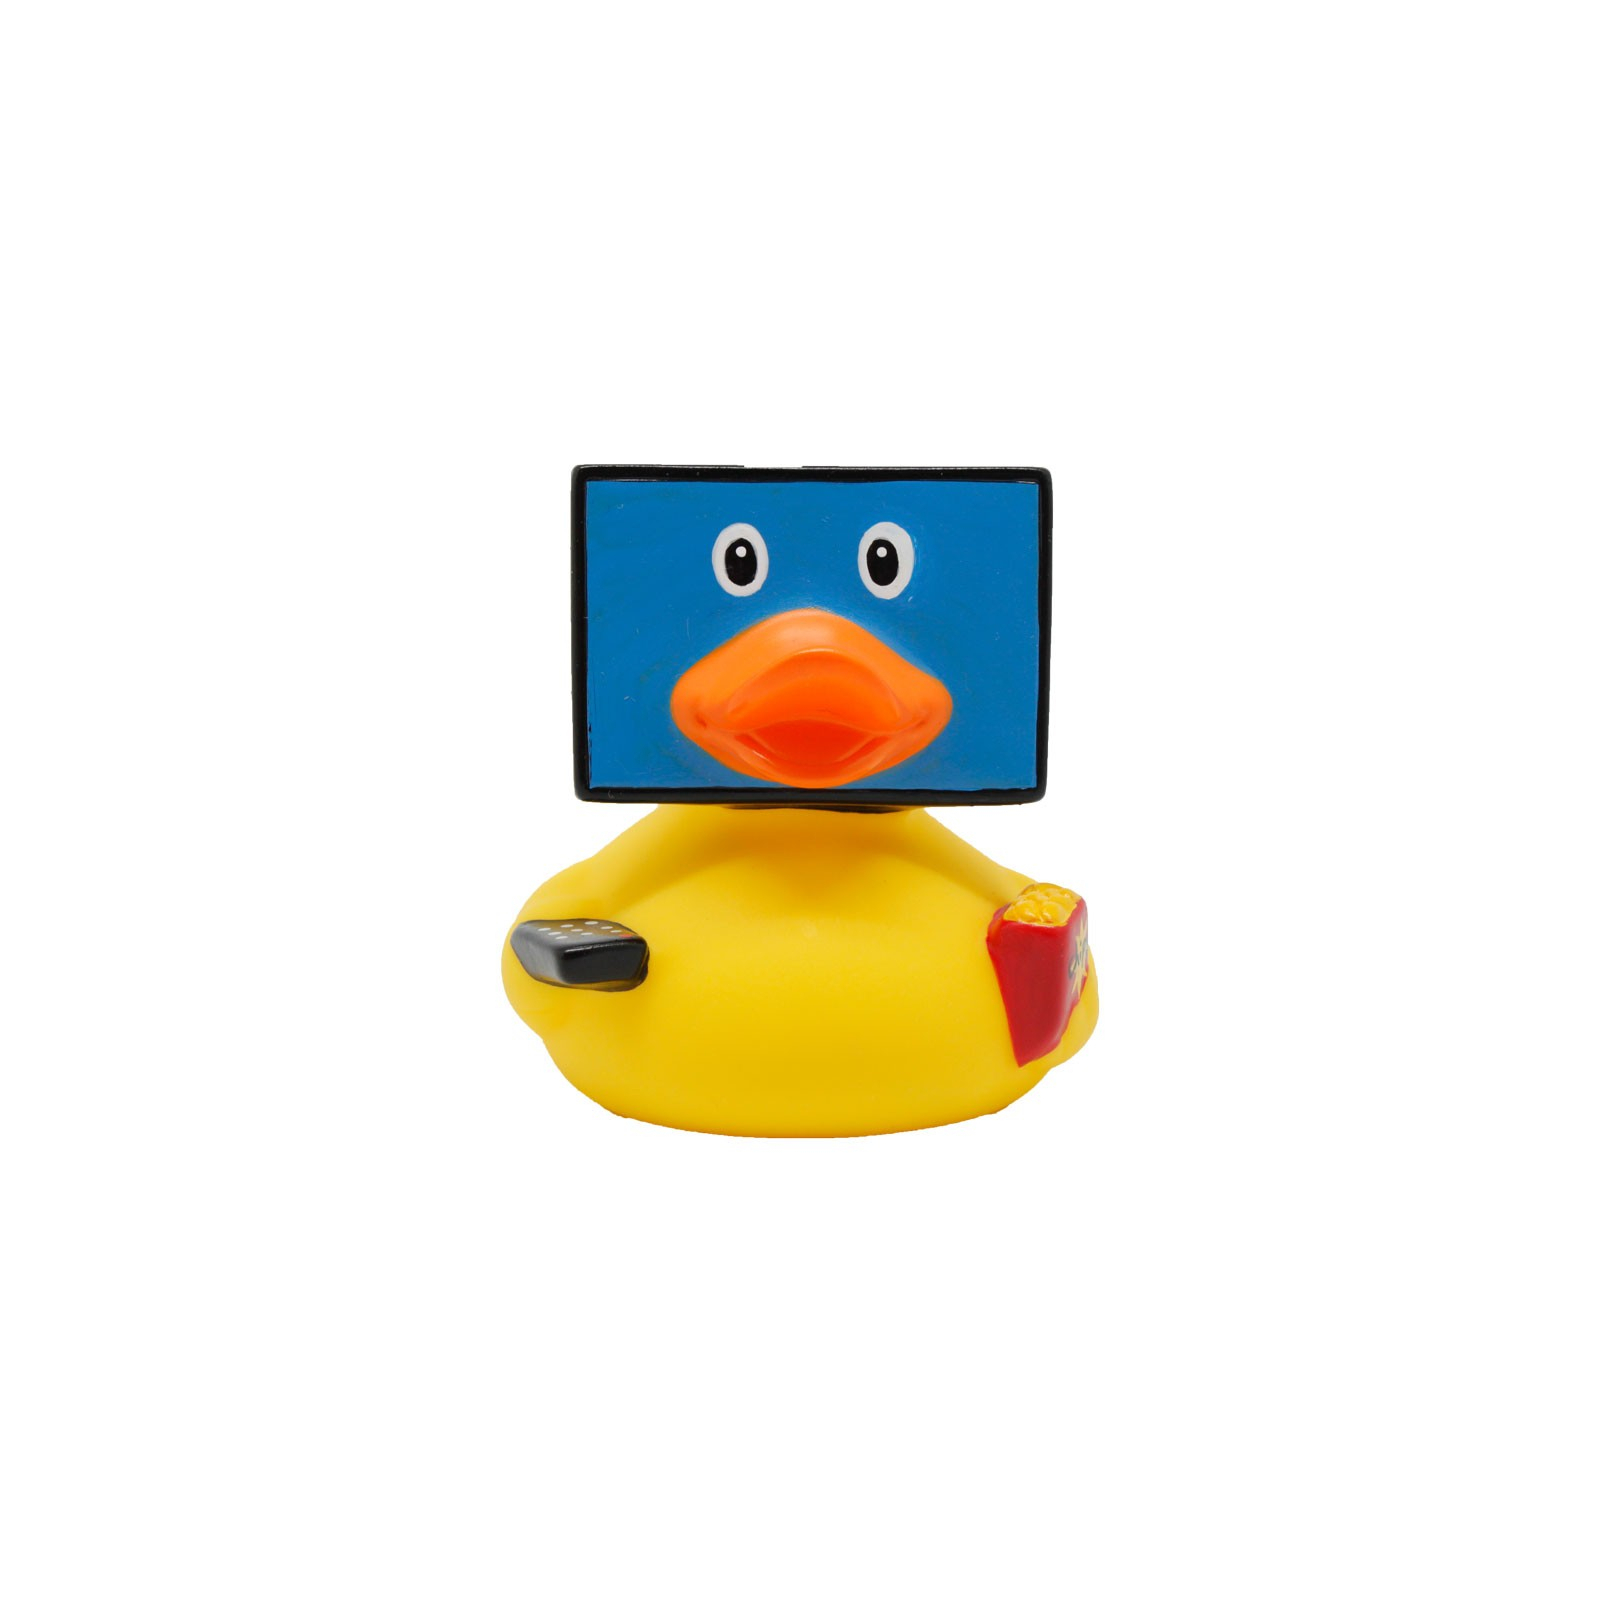 Игрушка для ванной Funny Ducks TV утка (L1907) изображение 3